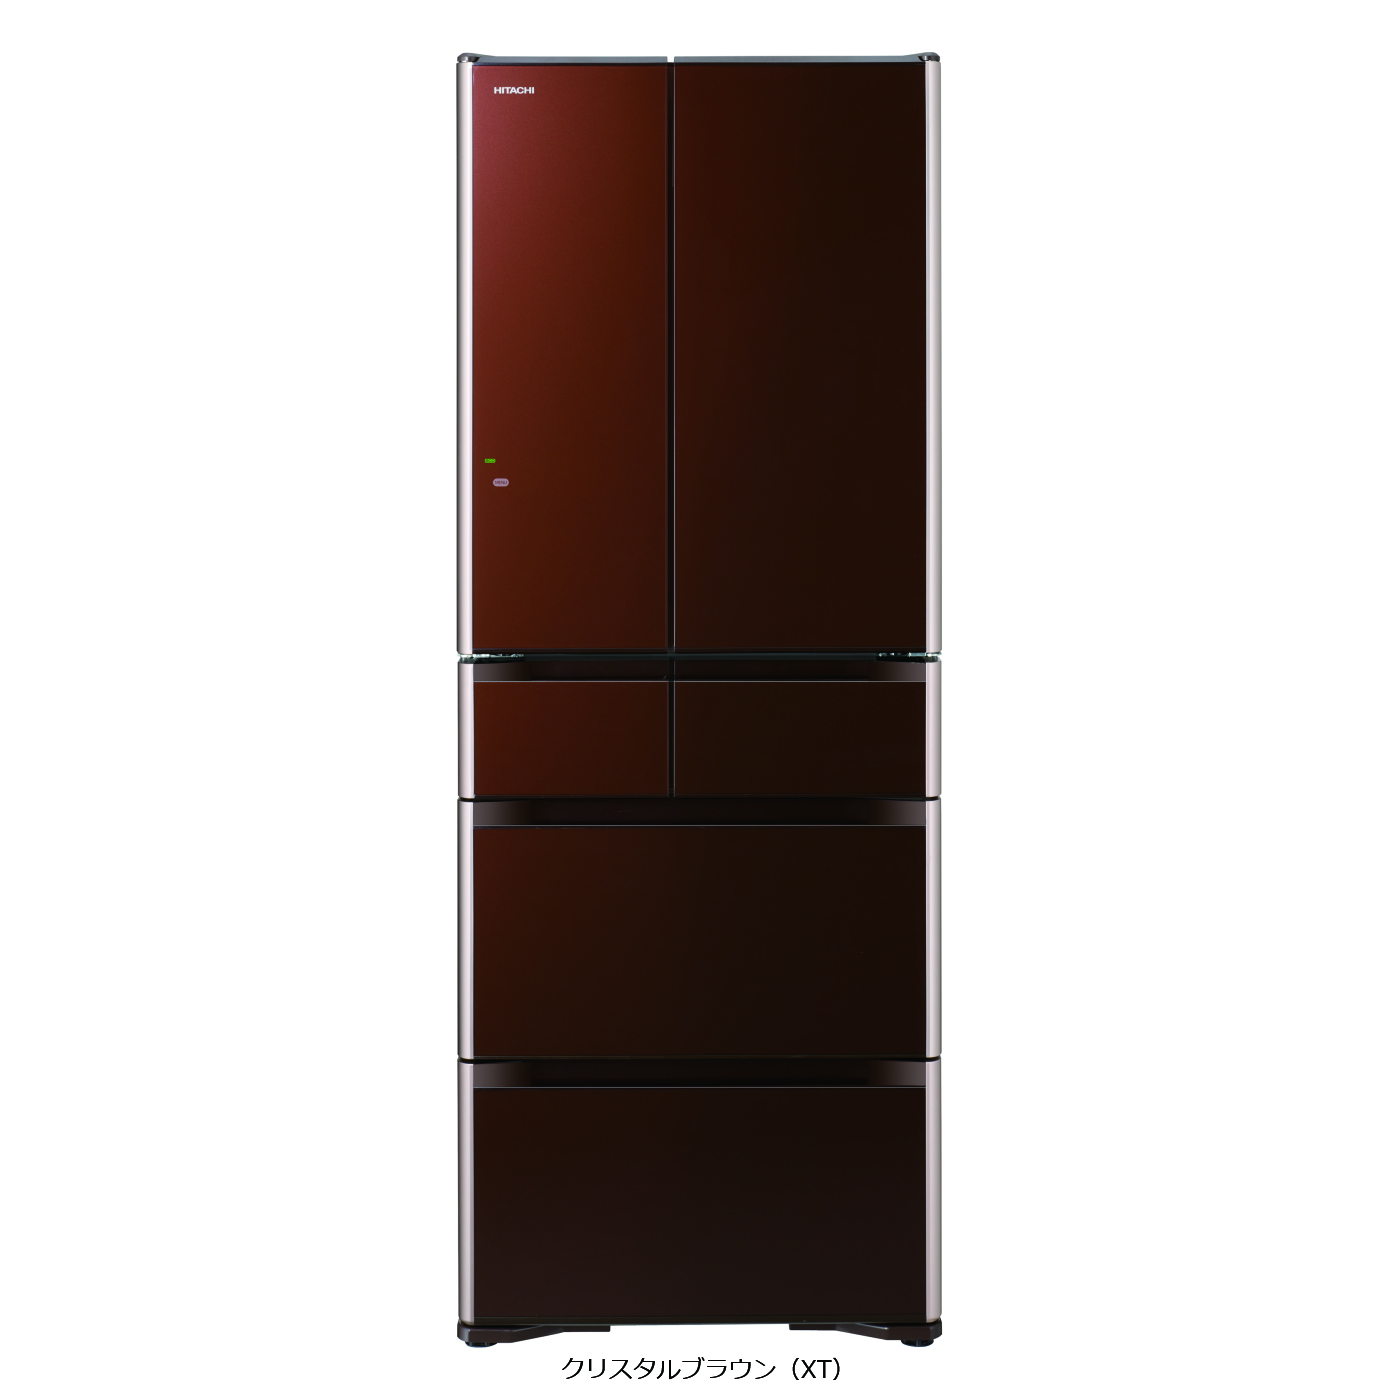 生活家電 冷蔵庫 真空チルド プレミアム XGシリーズ ： 冷蔵庫 ： 日立の家電品